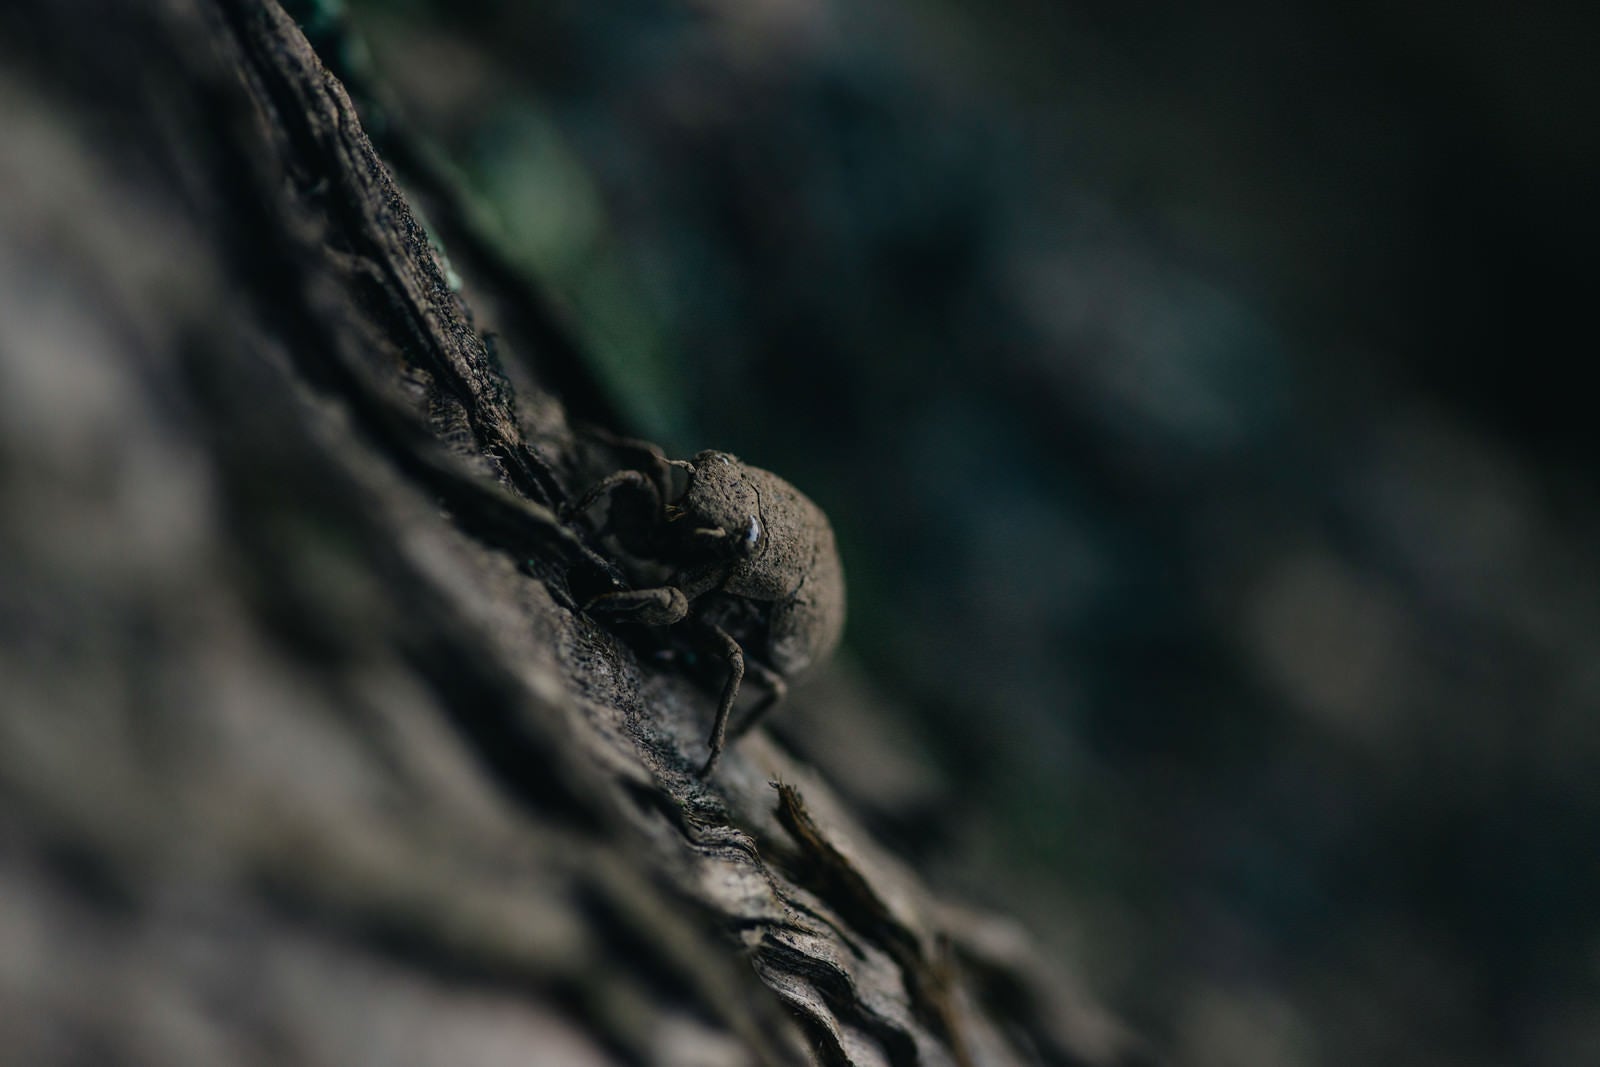 「地上から這い上がり木に捕まる蝉の幼虫」の写真